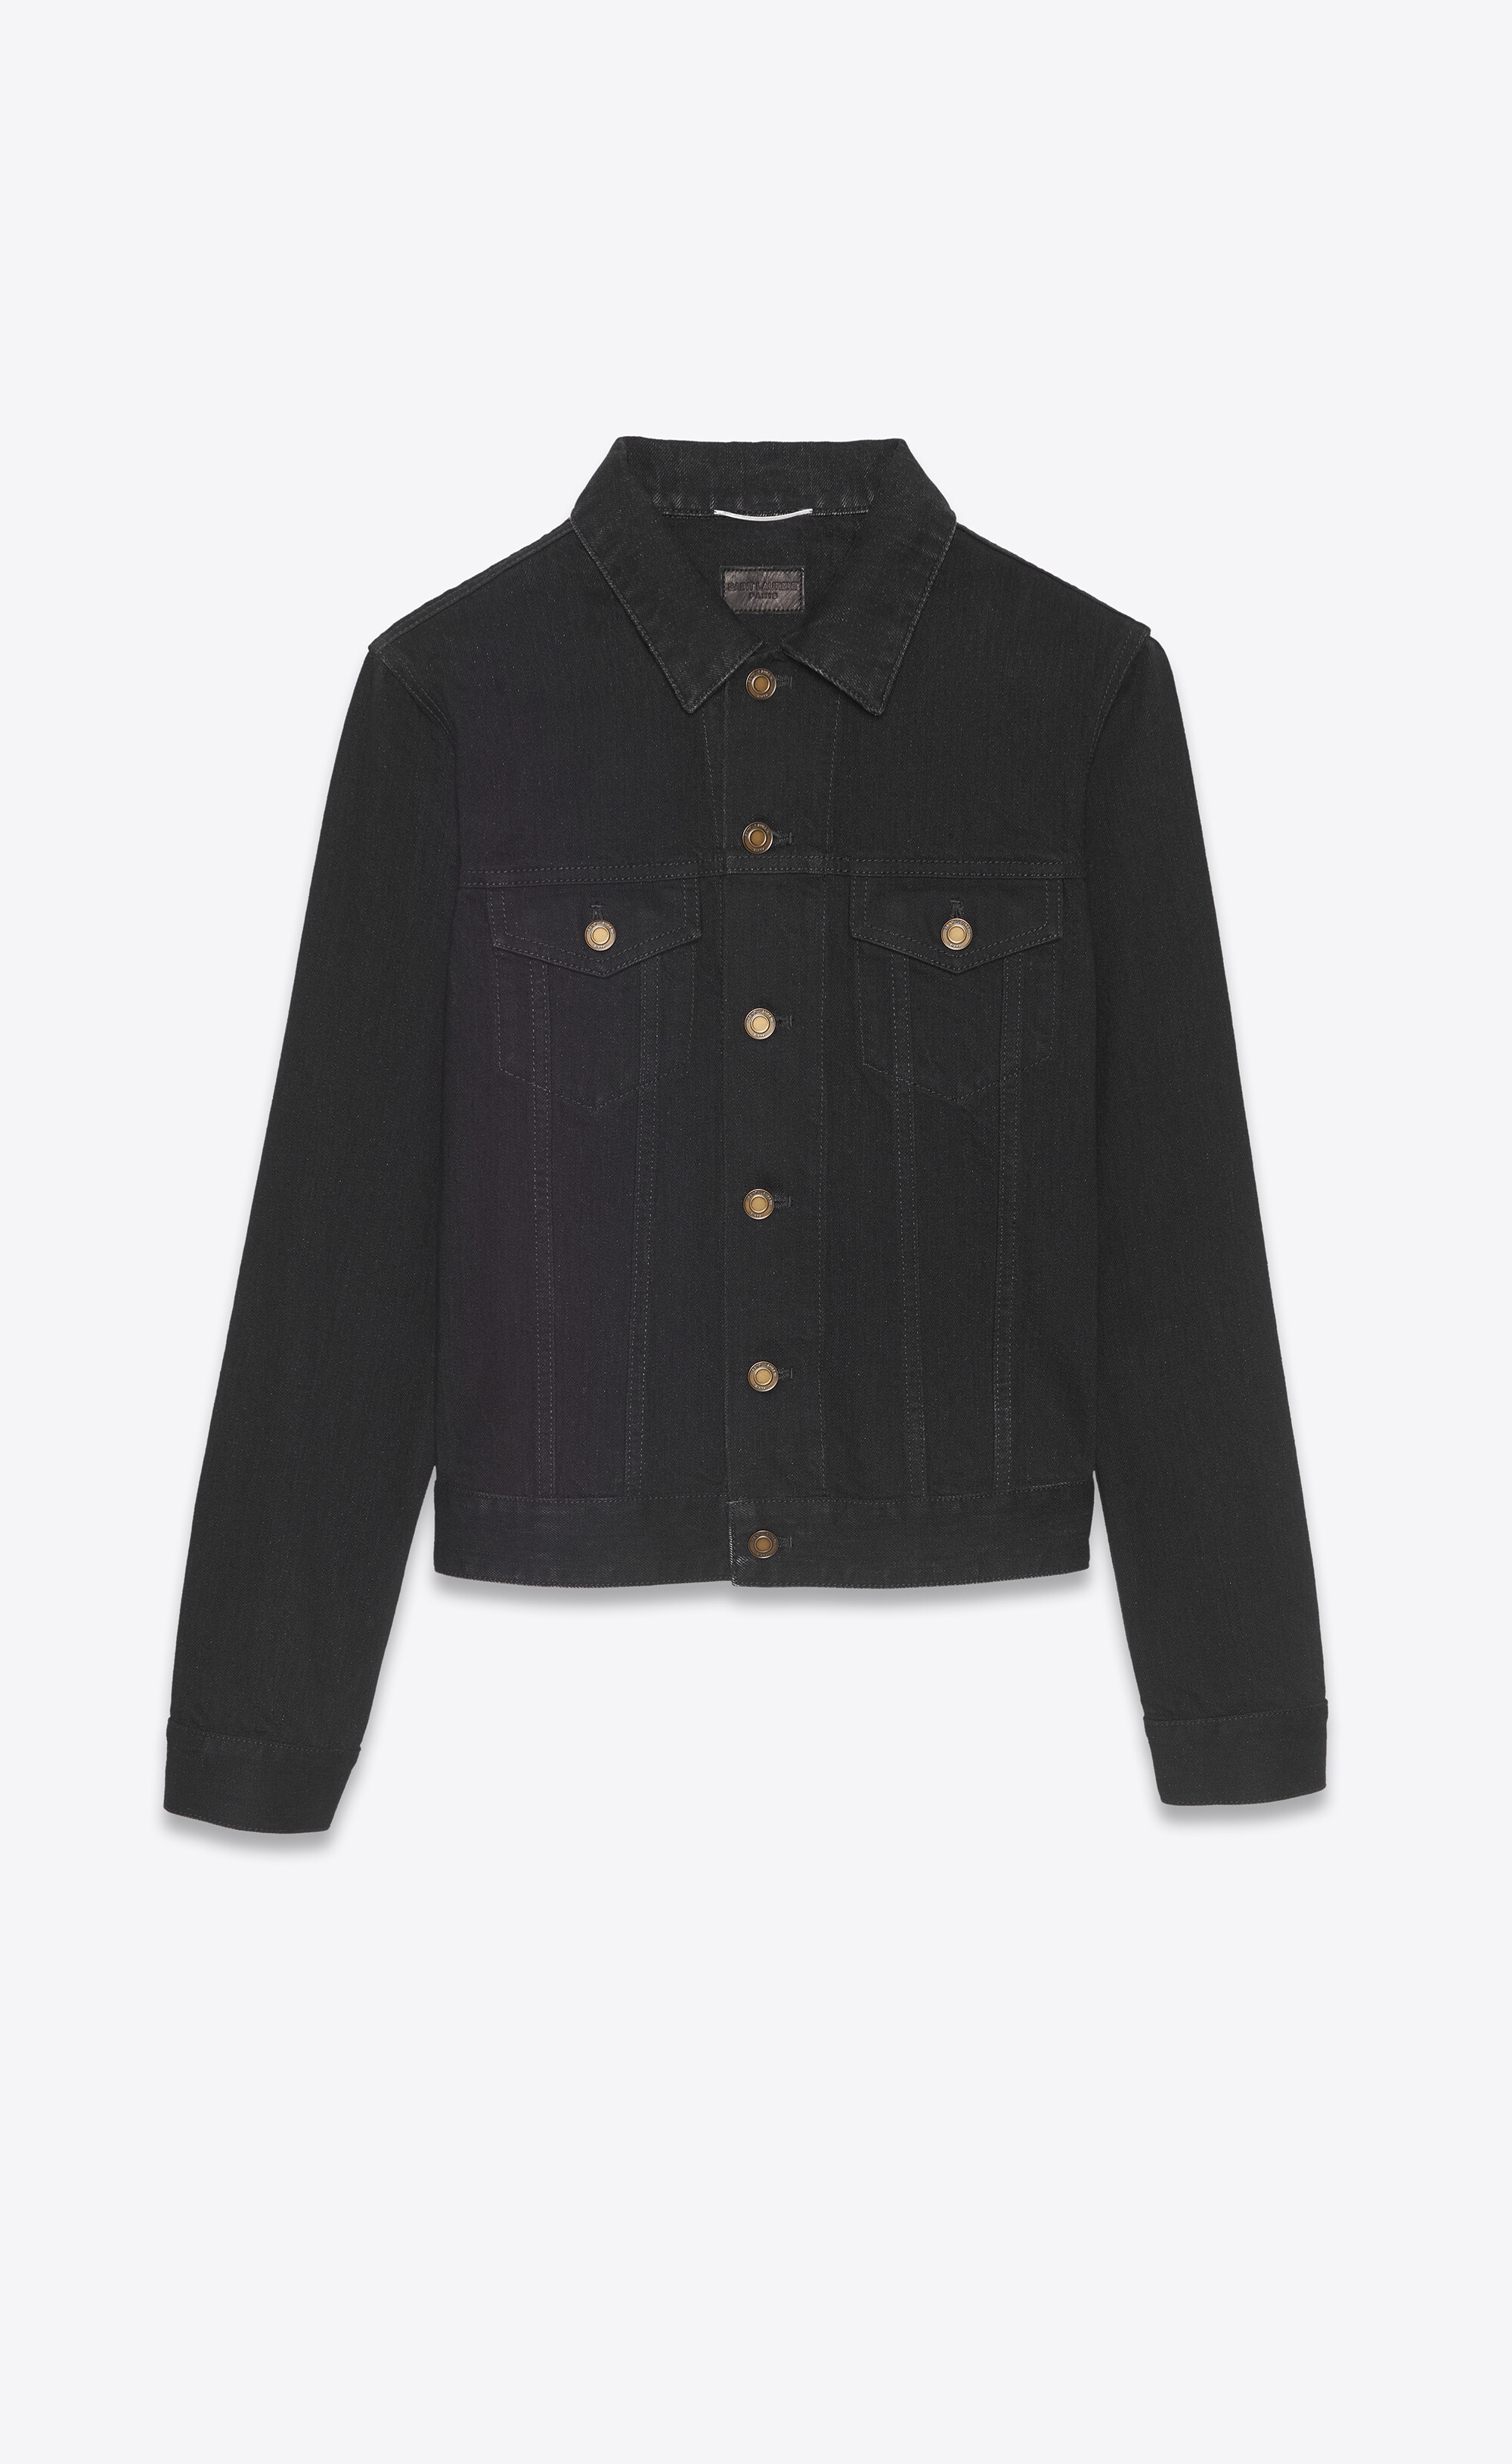 Fitted jacket in worn black denim, Saint Laurent